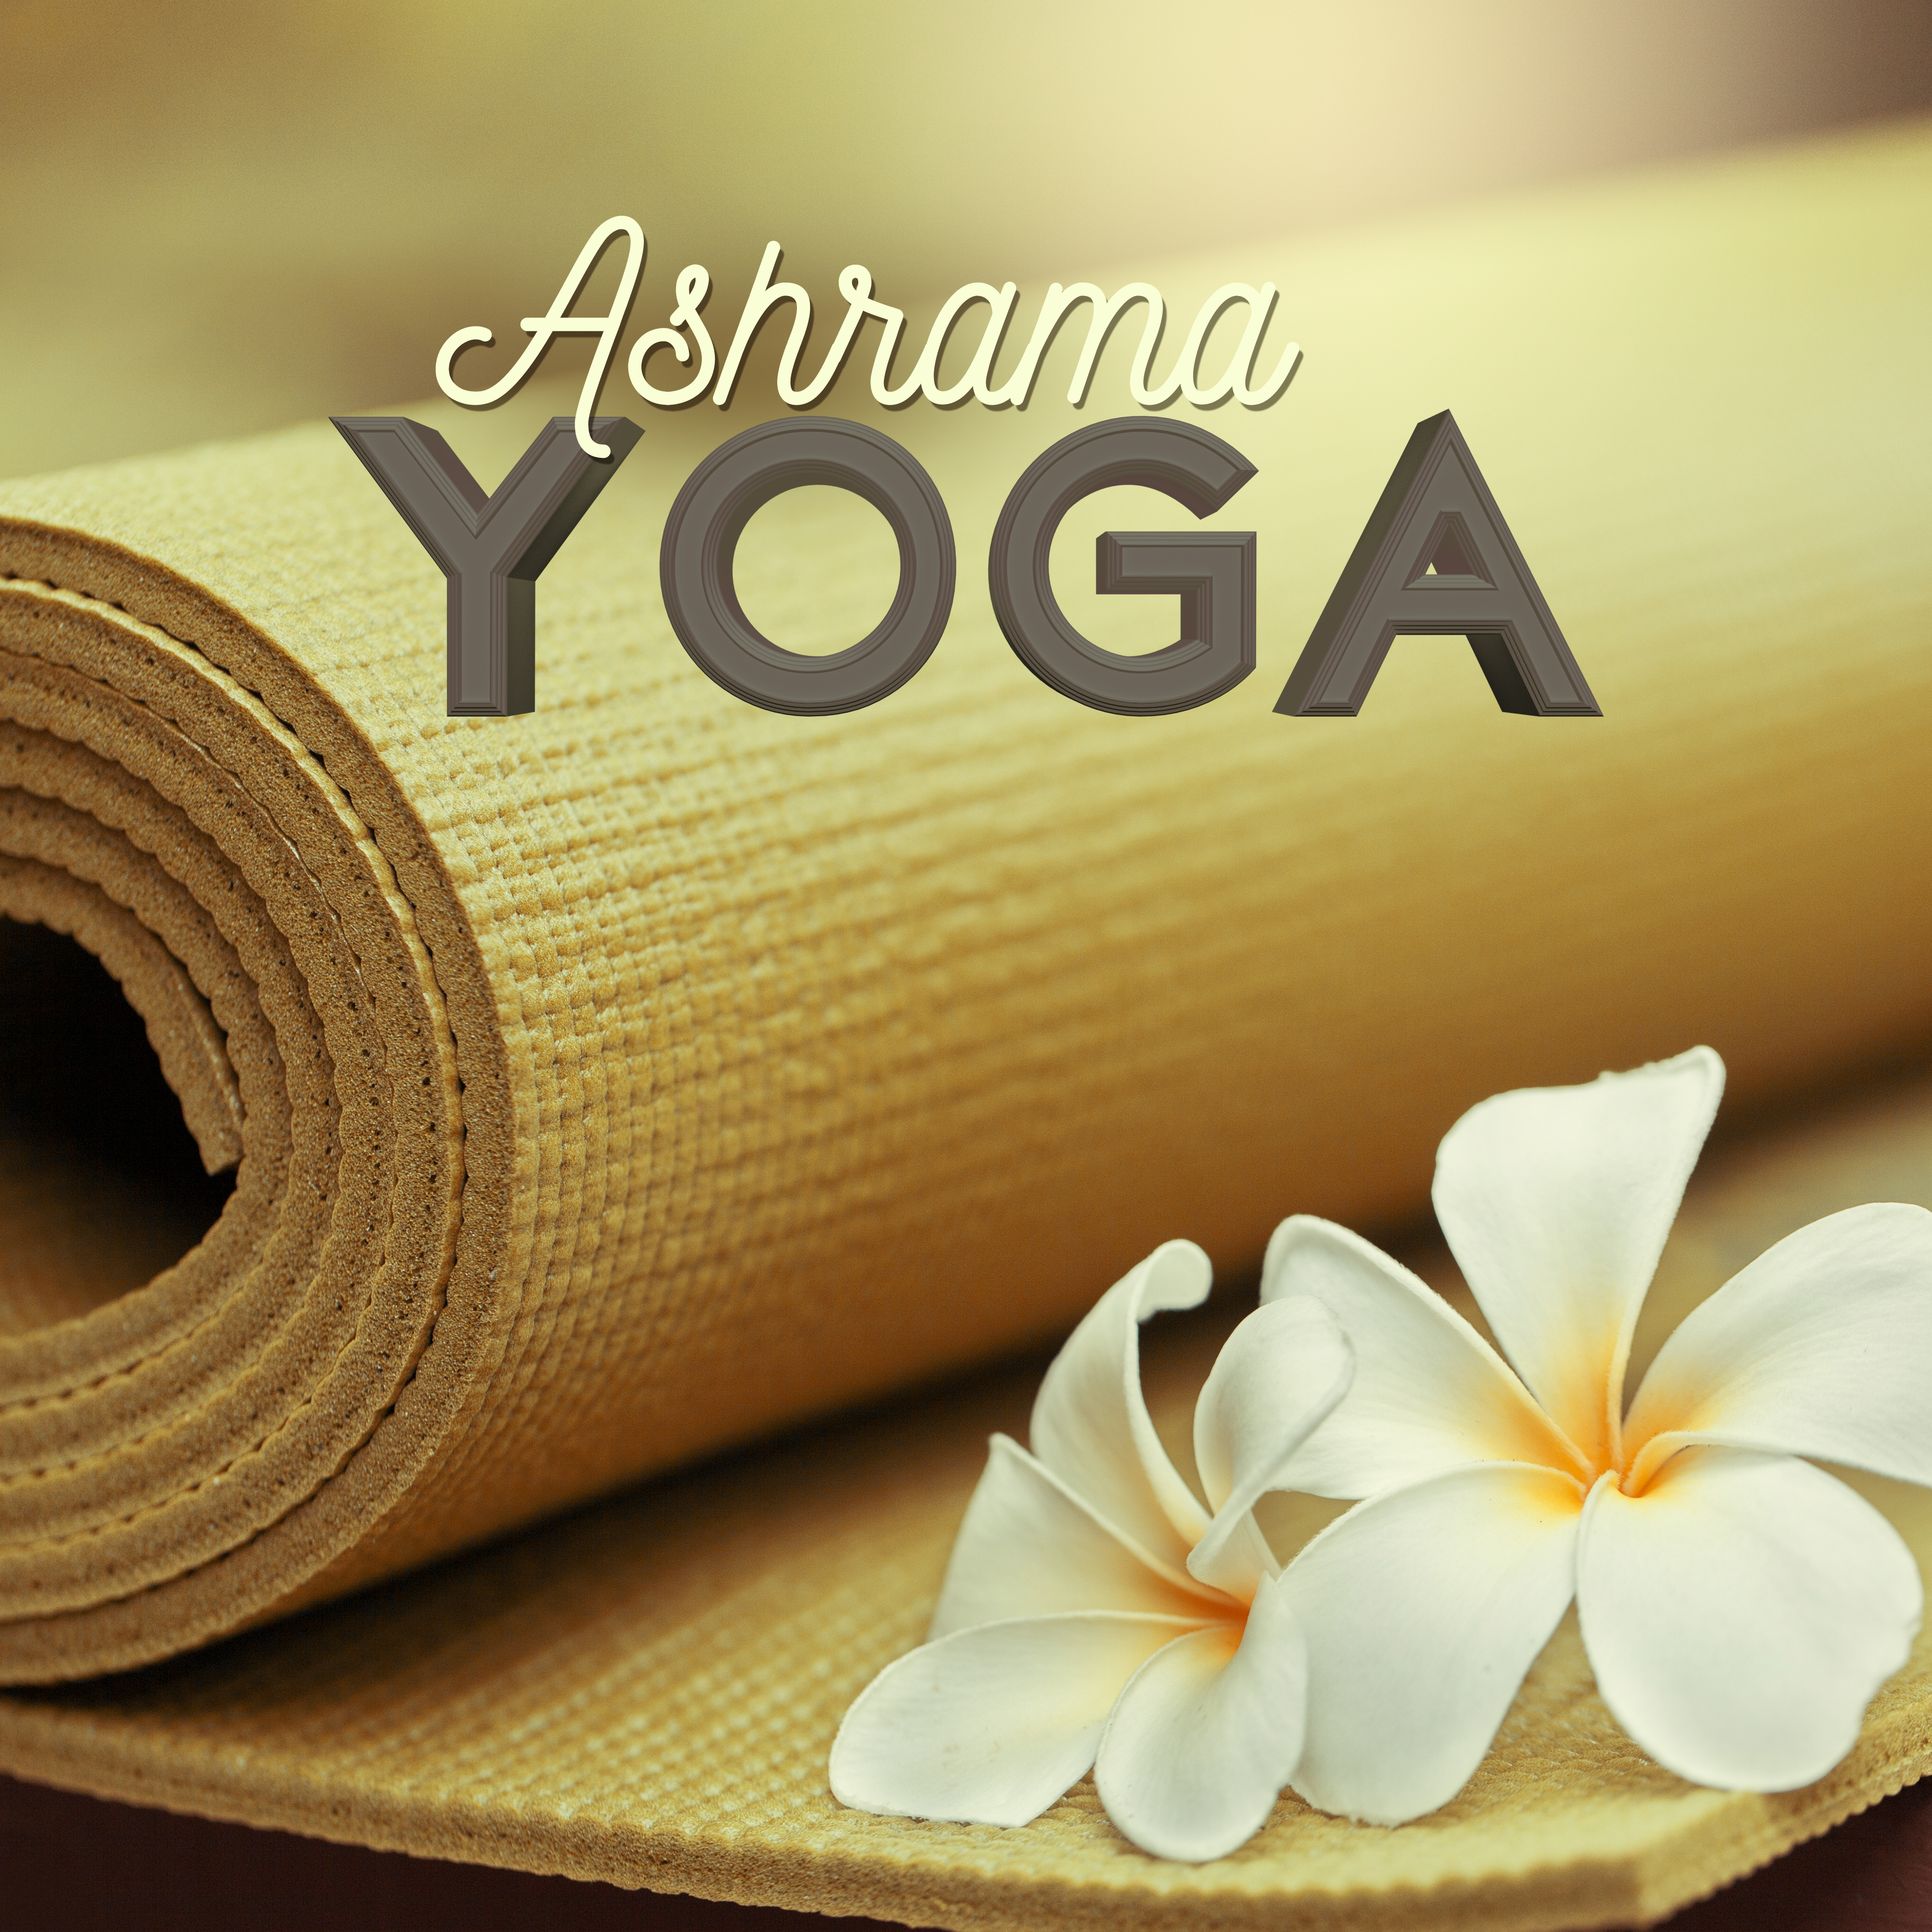 Ashrama Yoga